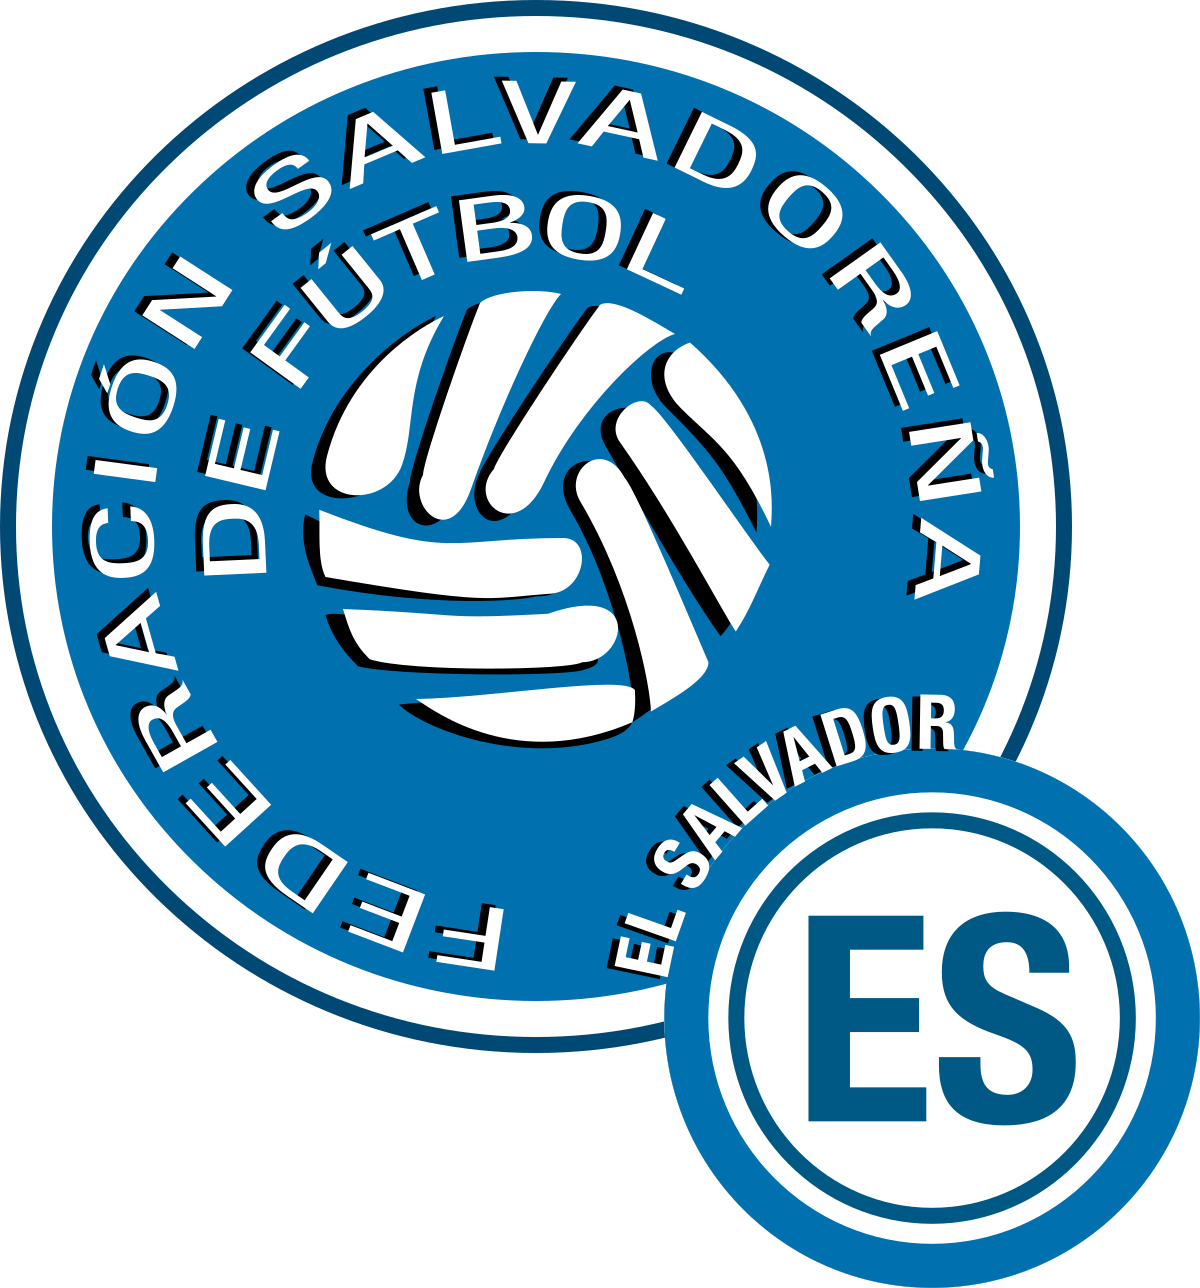 El Salvador national football team - Wikipedia